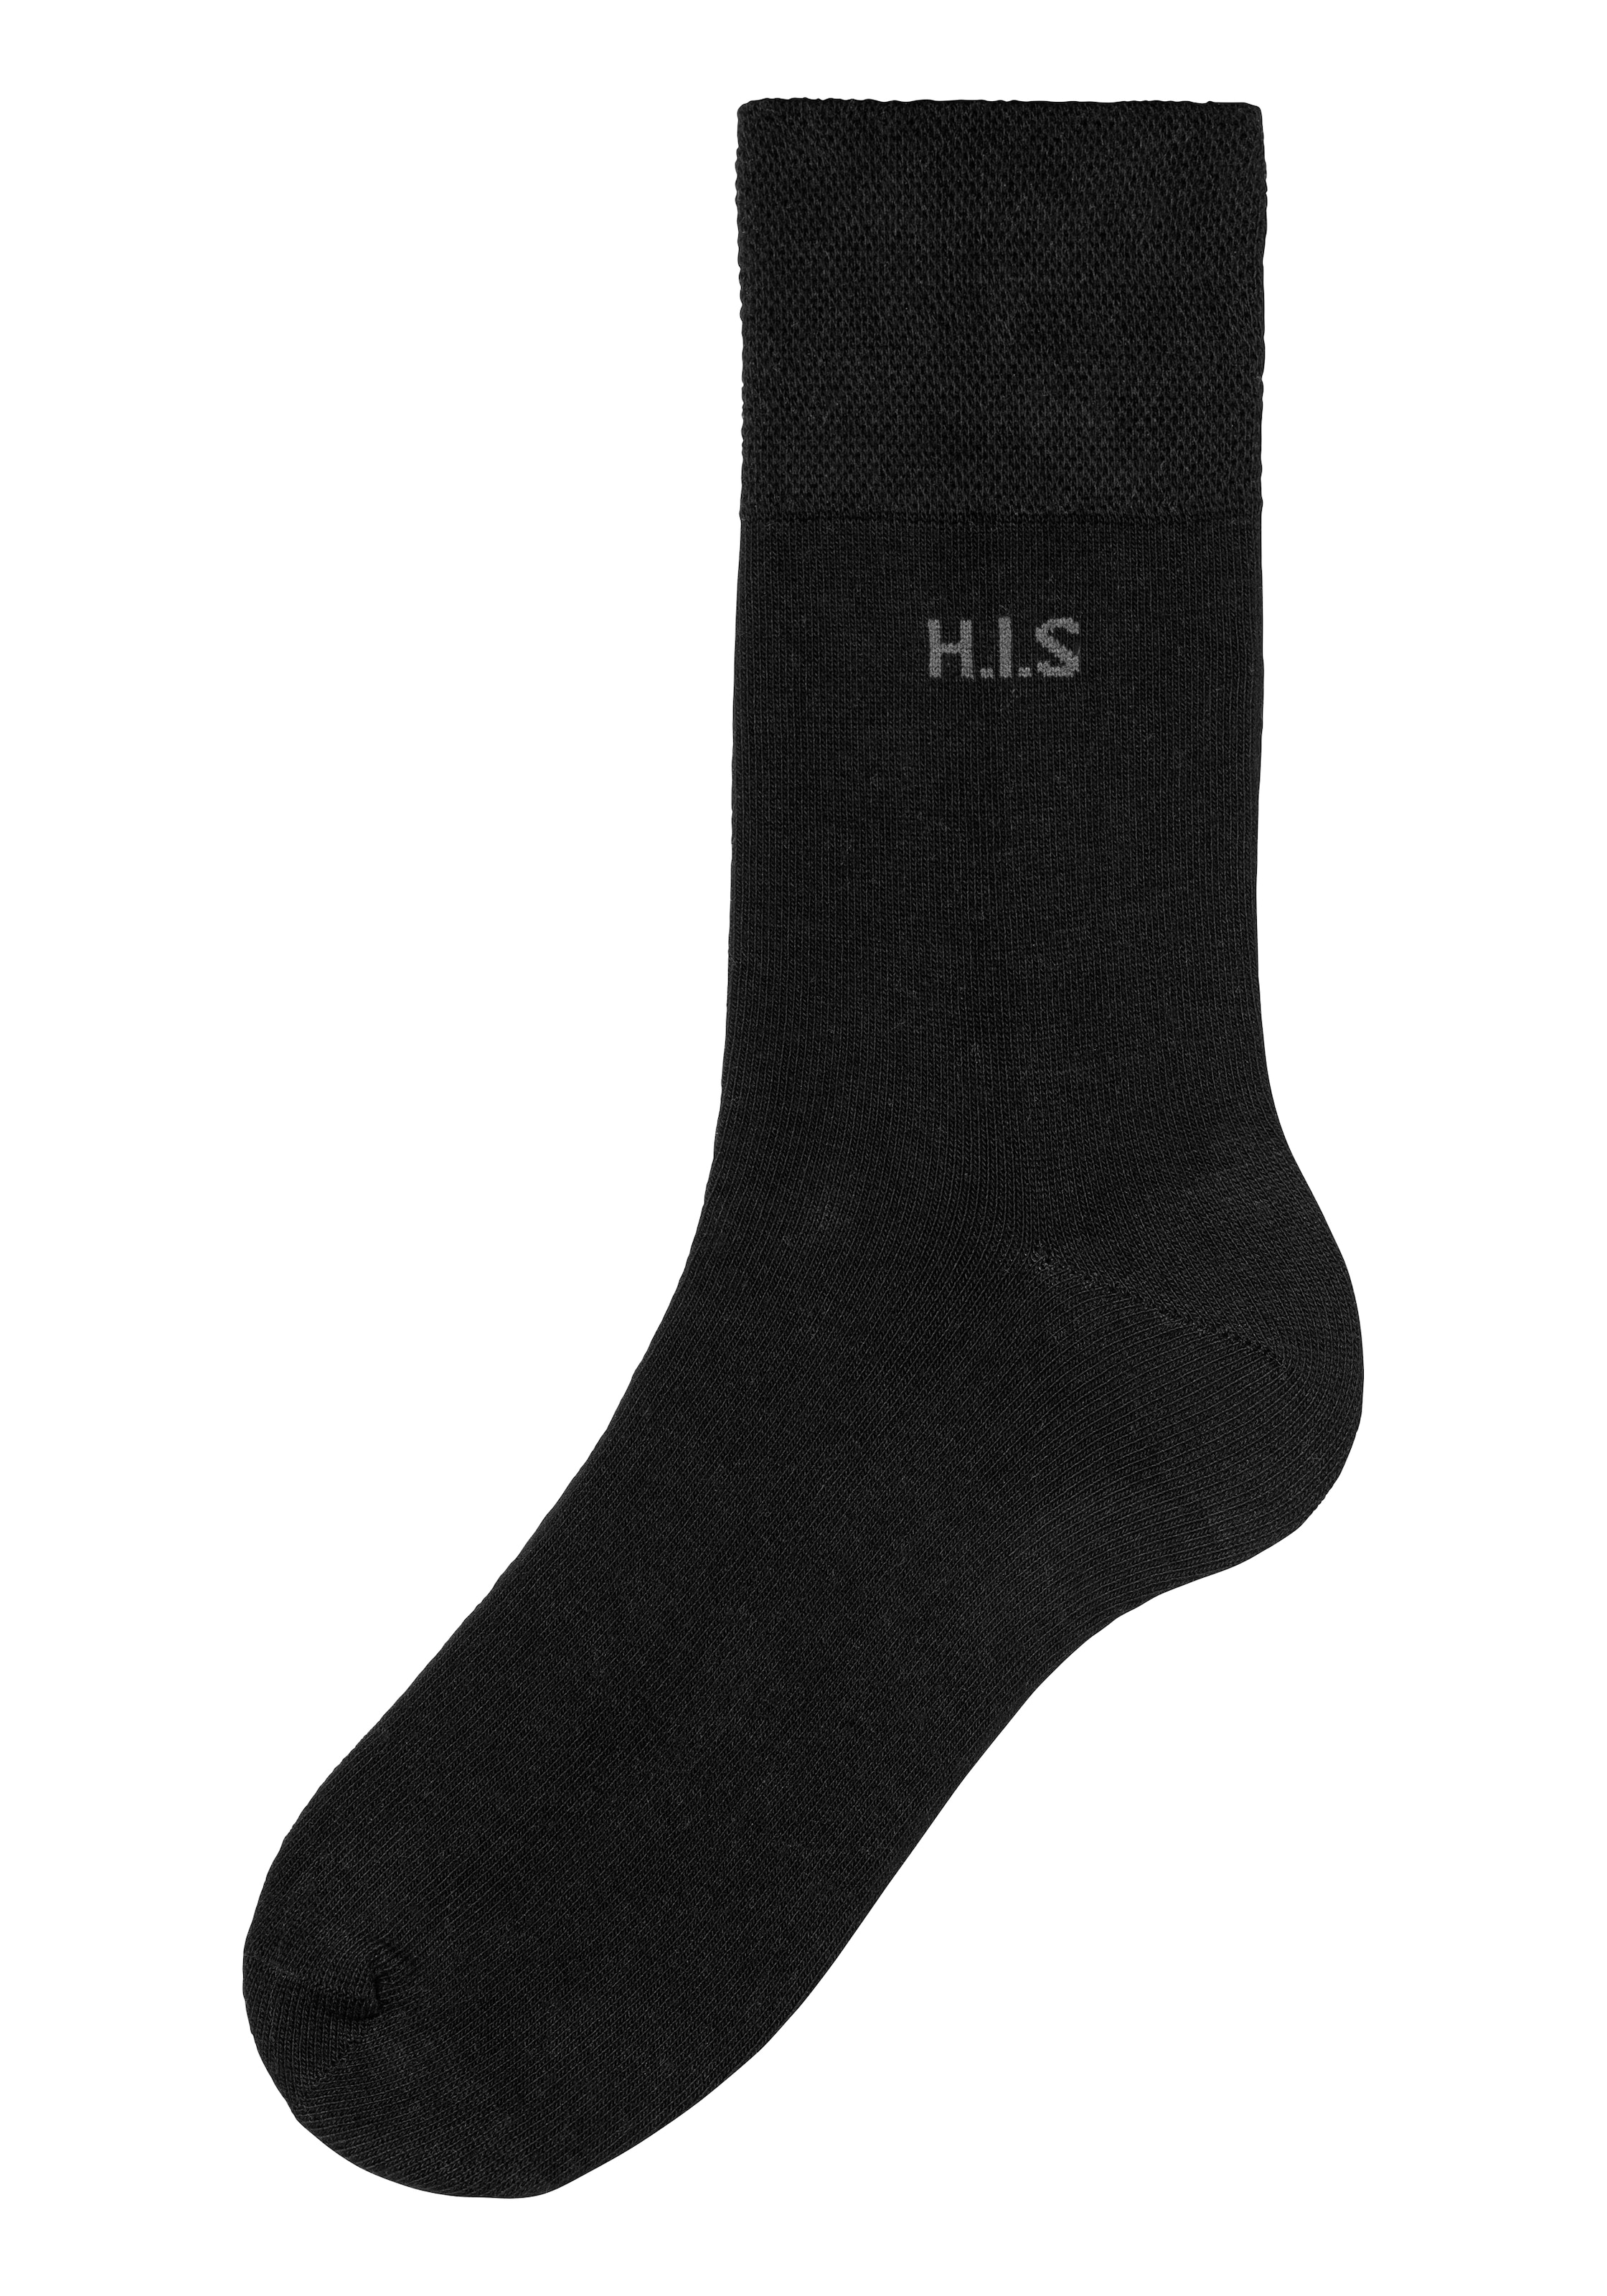 H.I.S bestellen I\'m Socken, | (Packung, einschneidendes walking 12 Paar), Gummi ohne